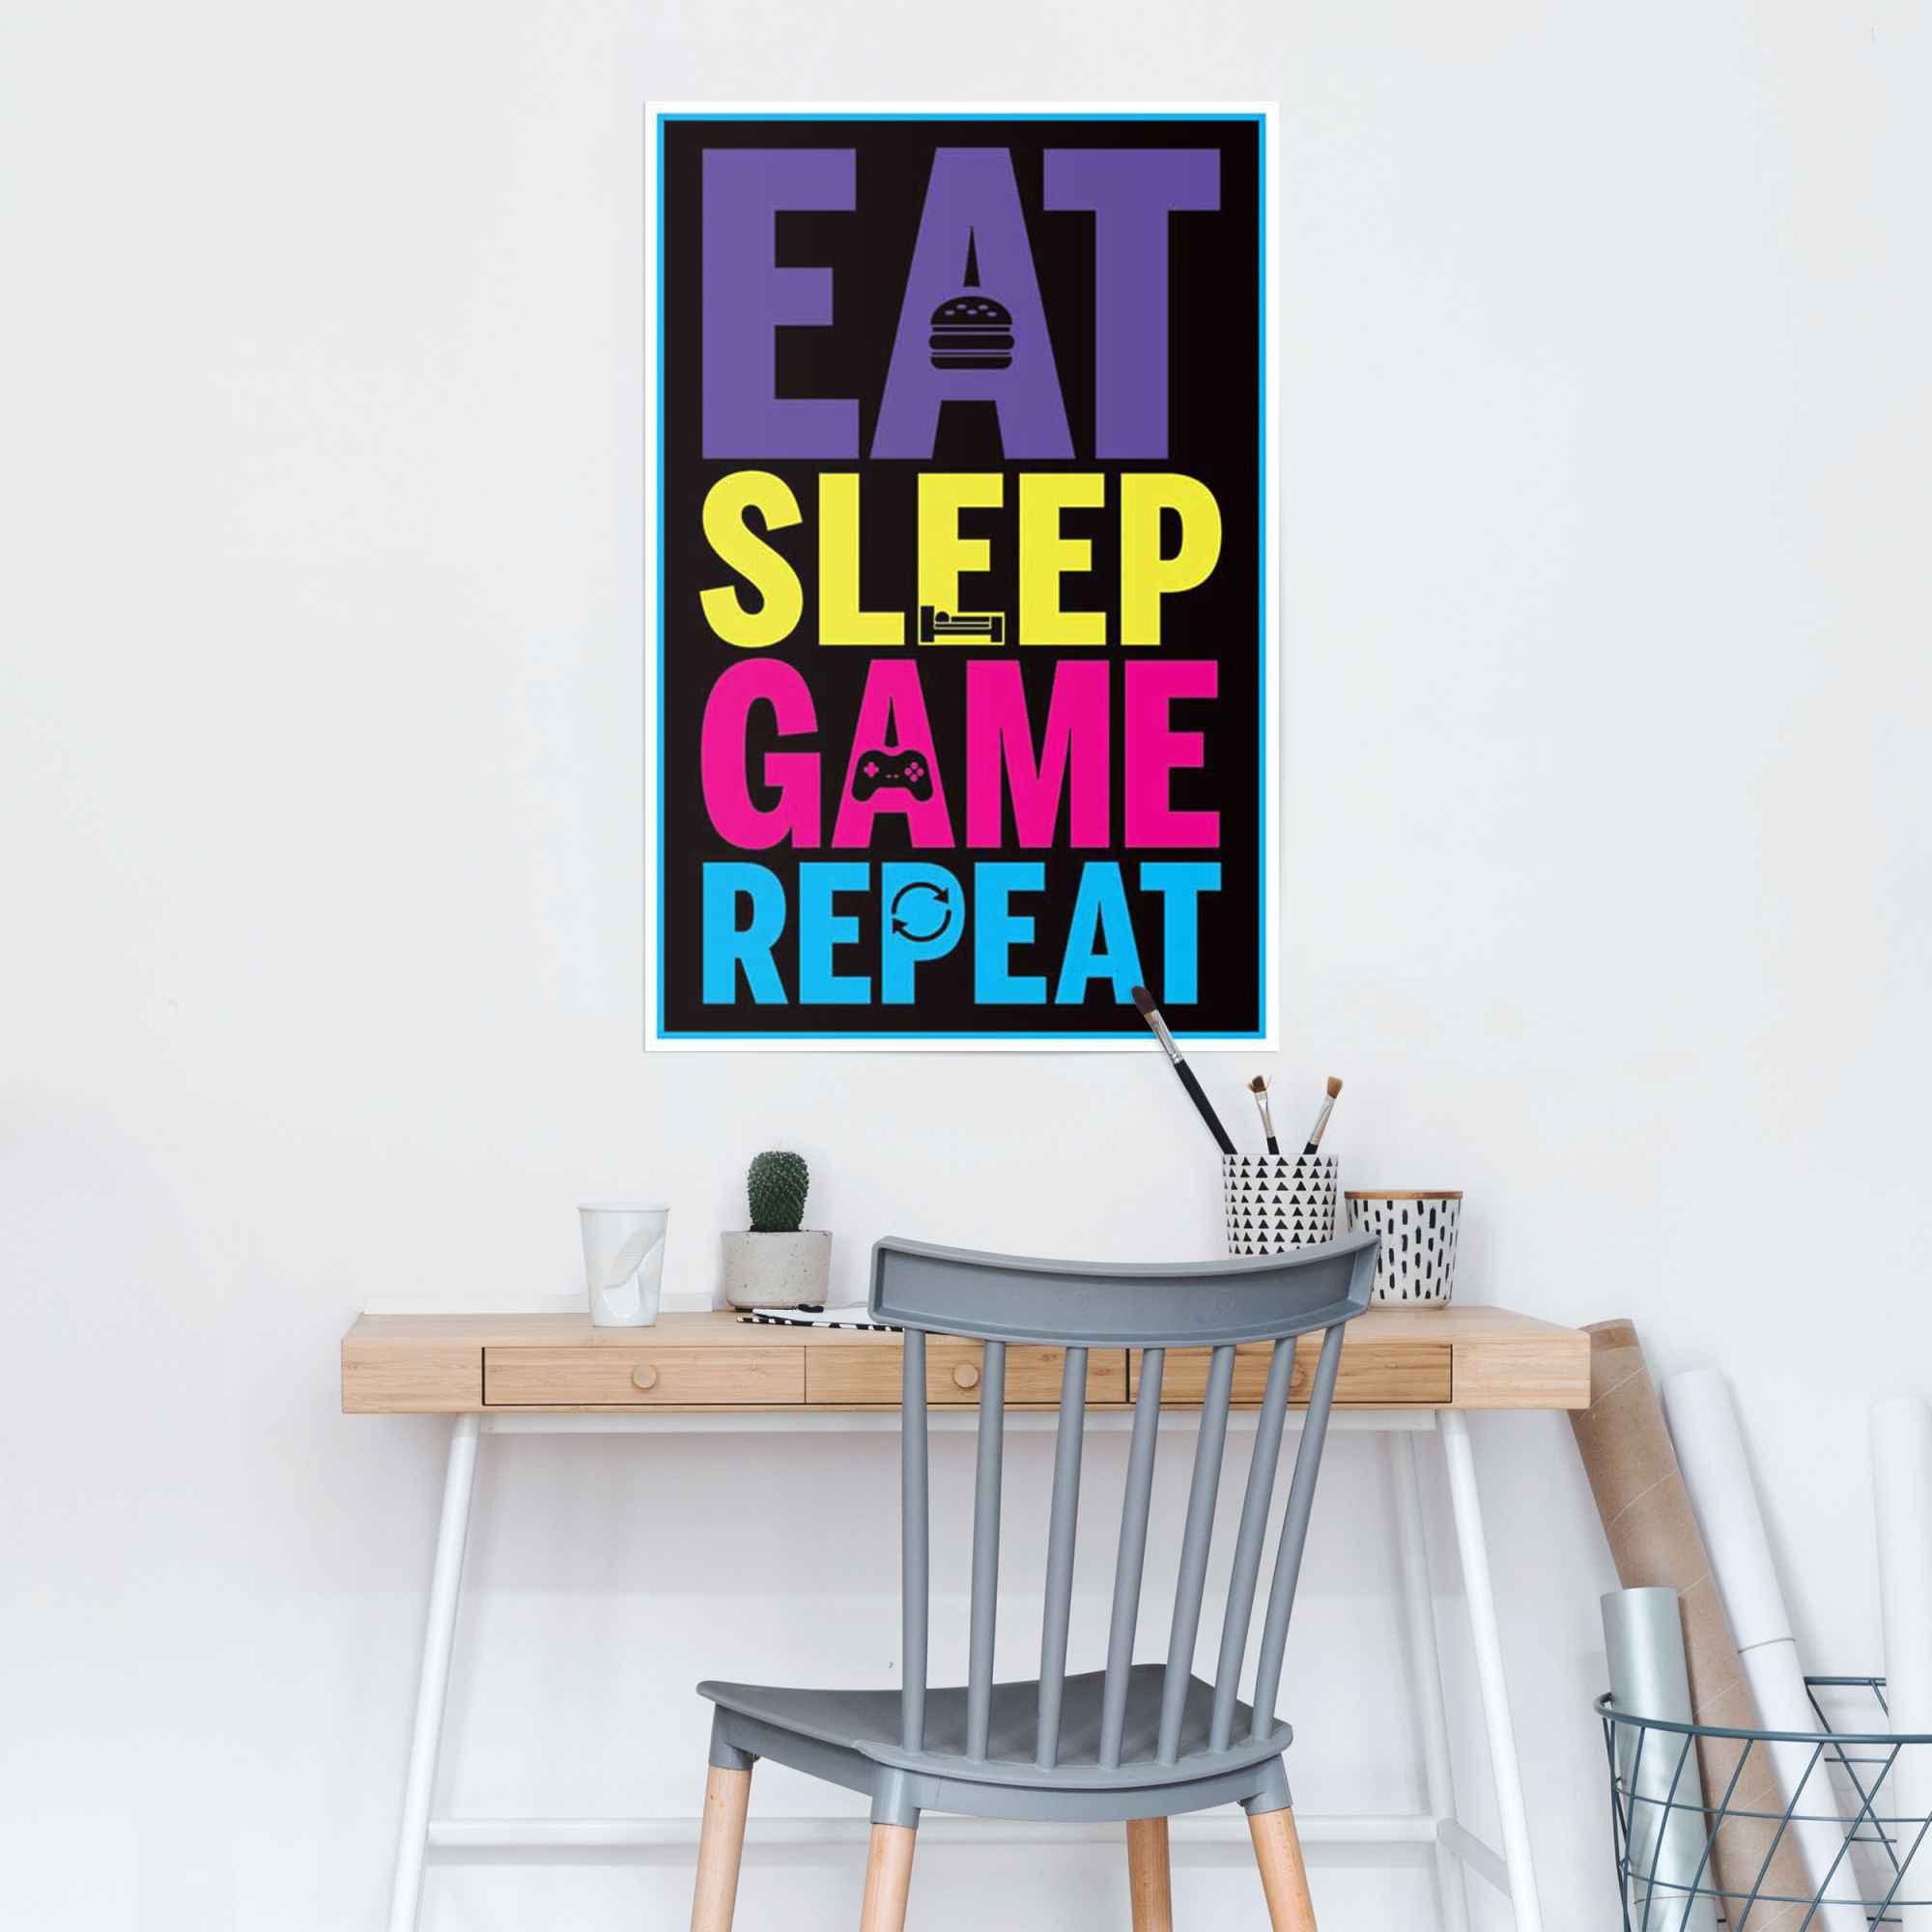 Reinders! Poster Eat game (1 sleep St) repeat